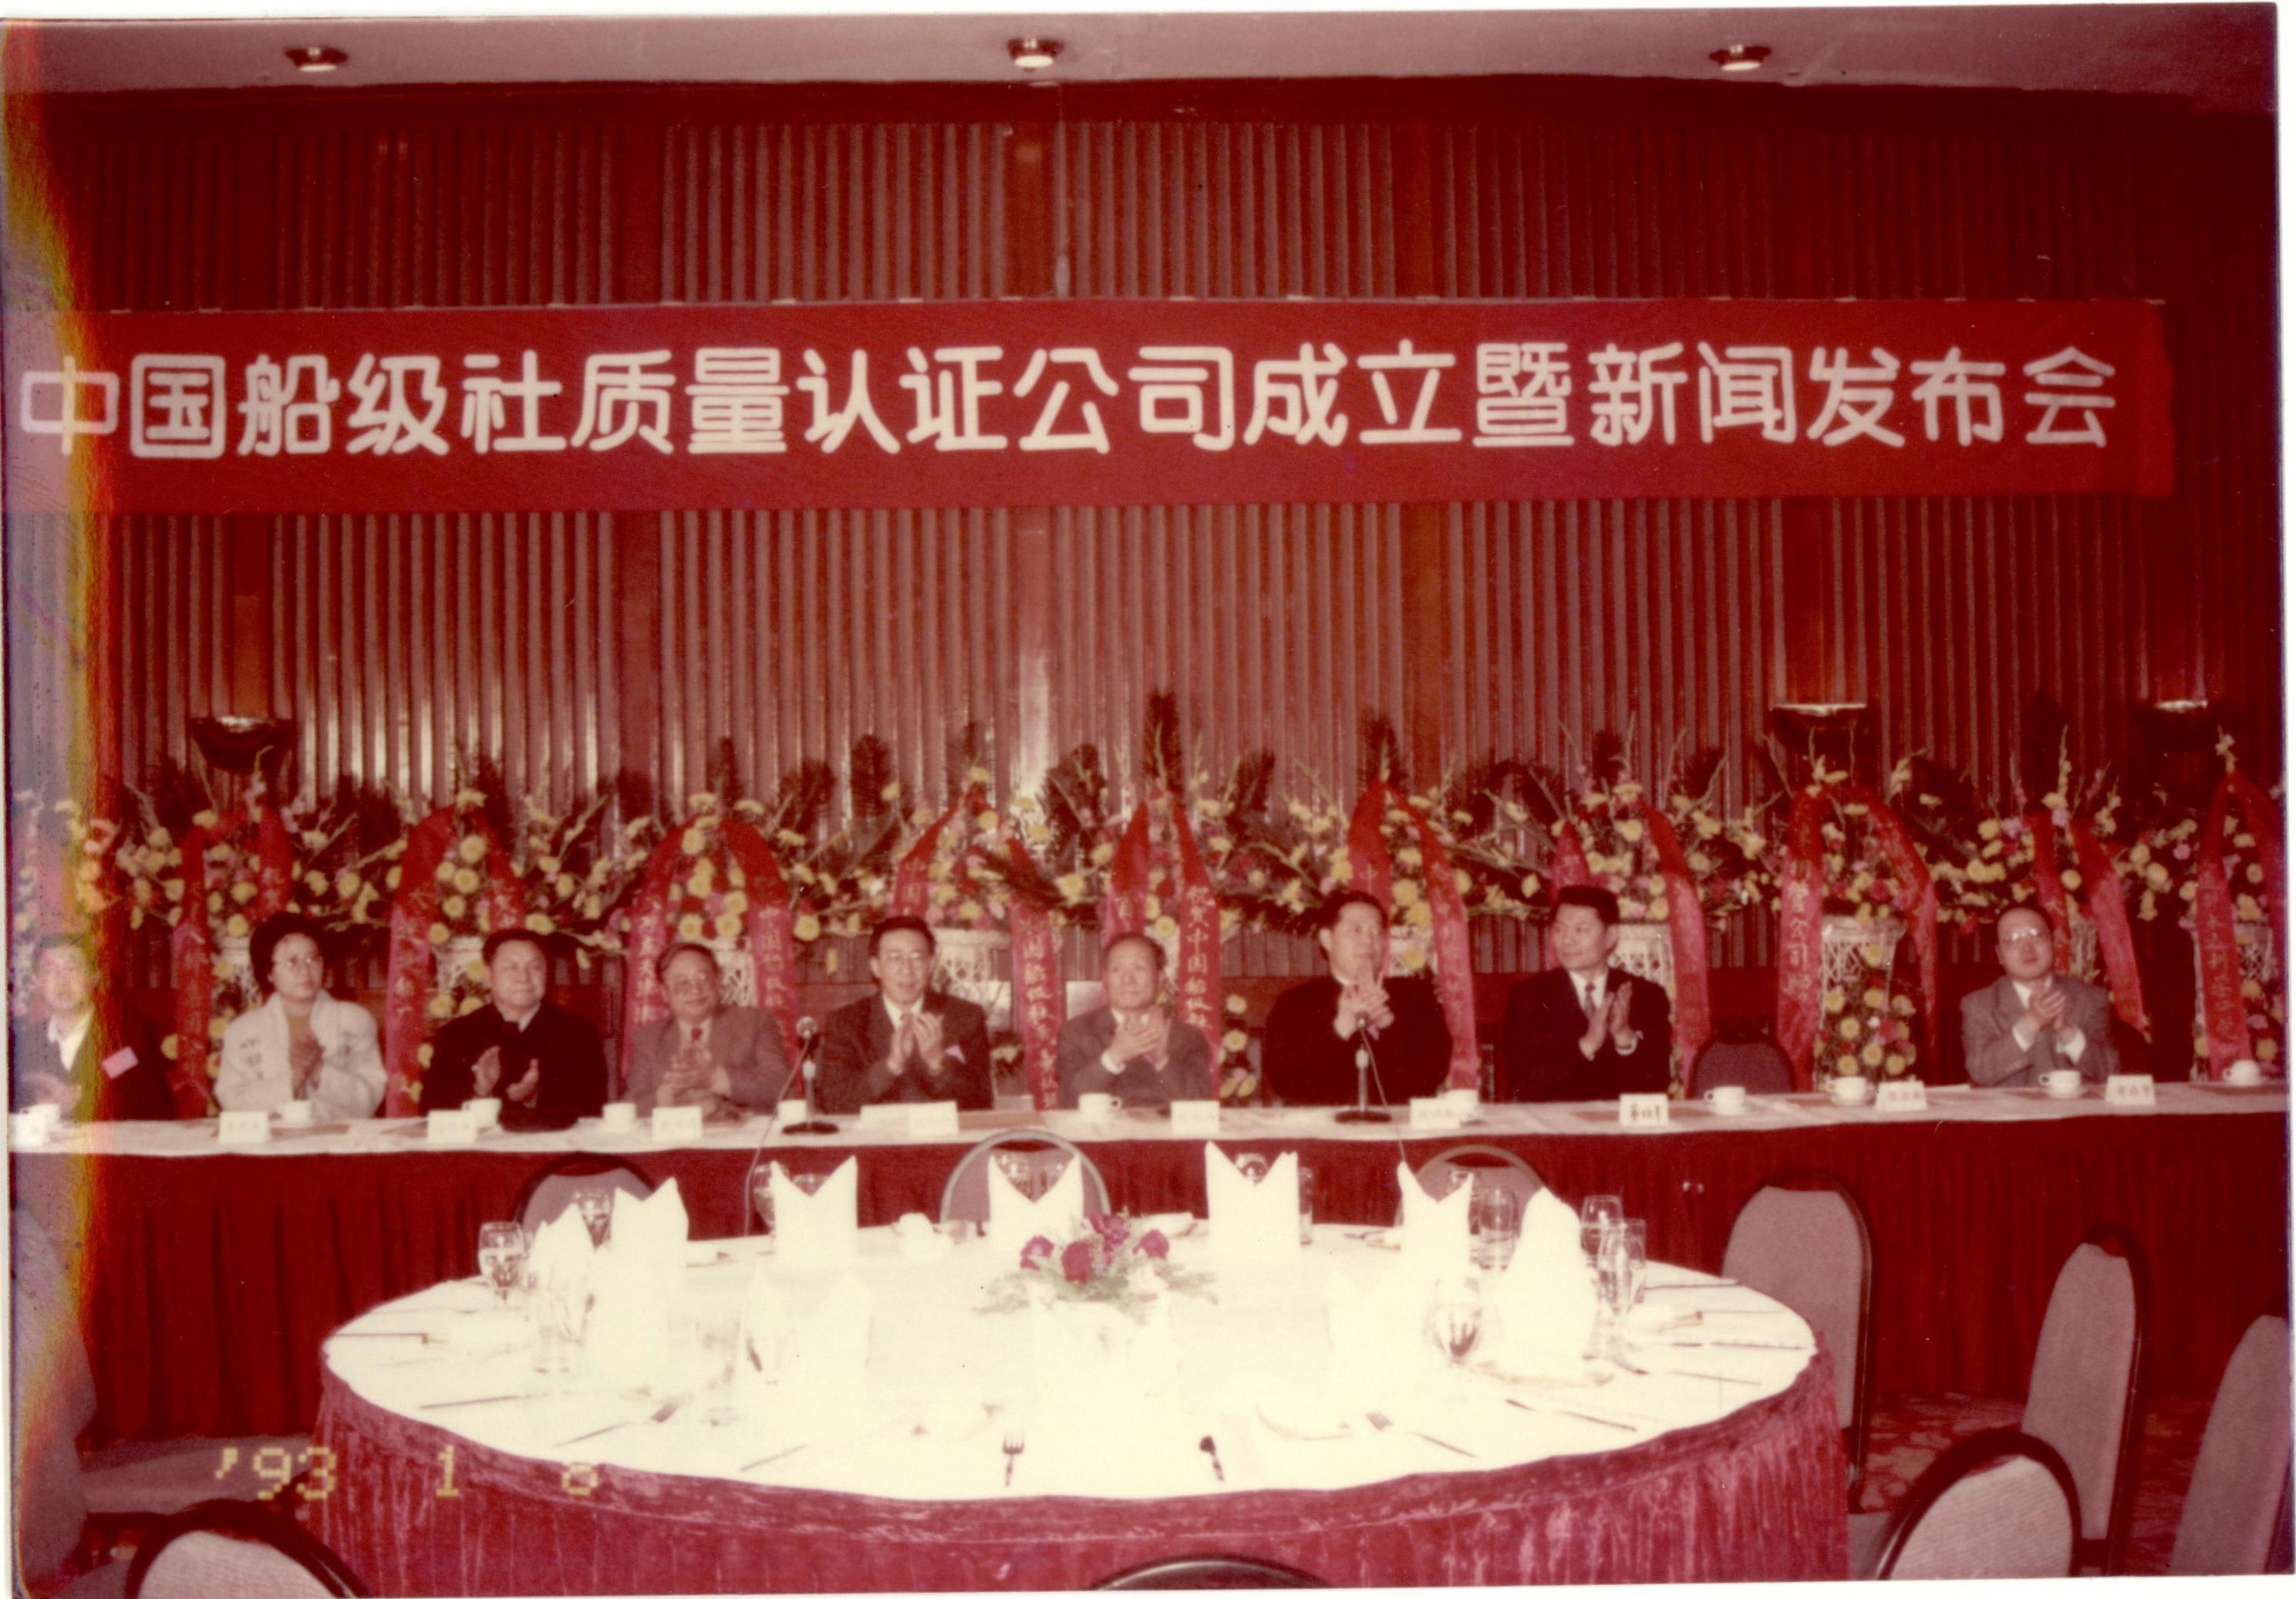 1993年1月8日，中国船级社在北京国际饭店召开新闻发布会宣布认证公司成立。.jpg